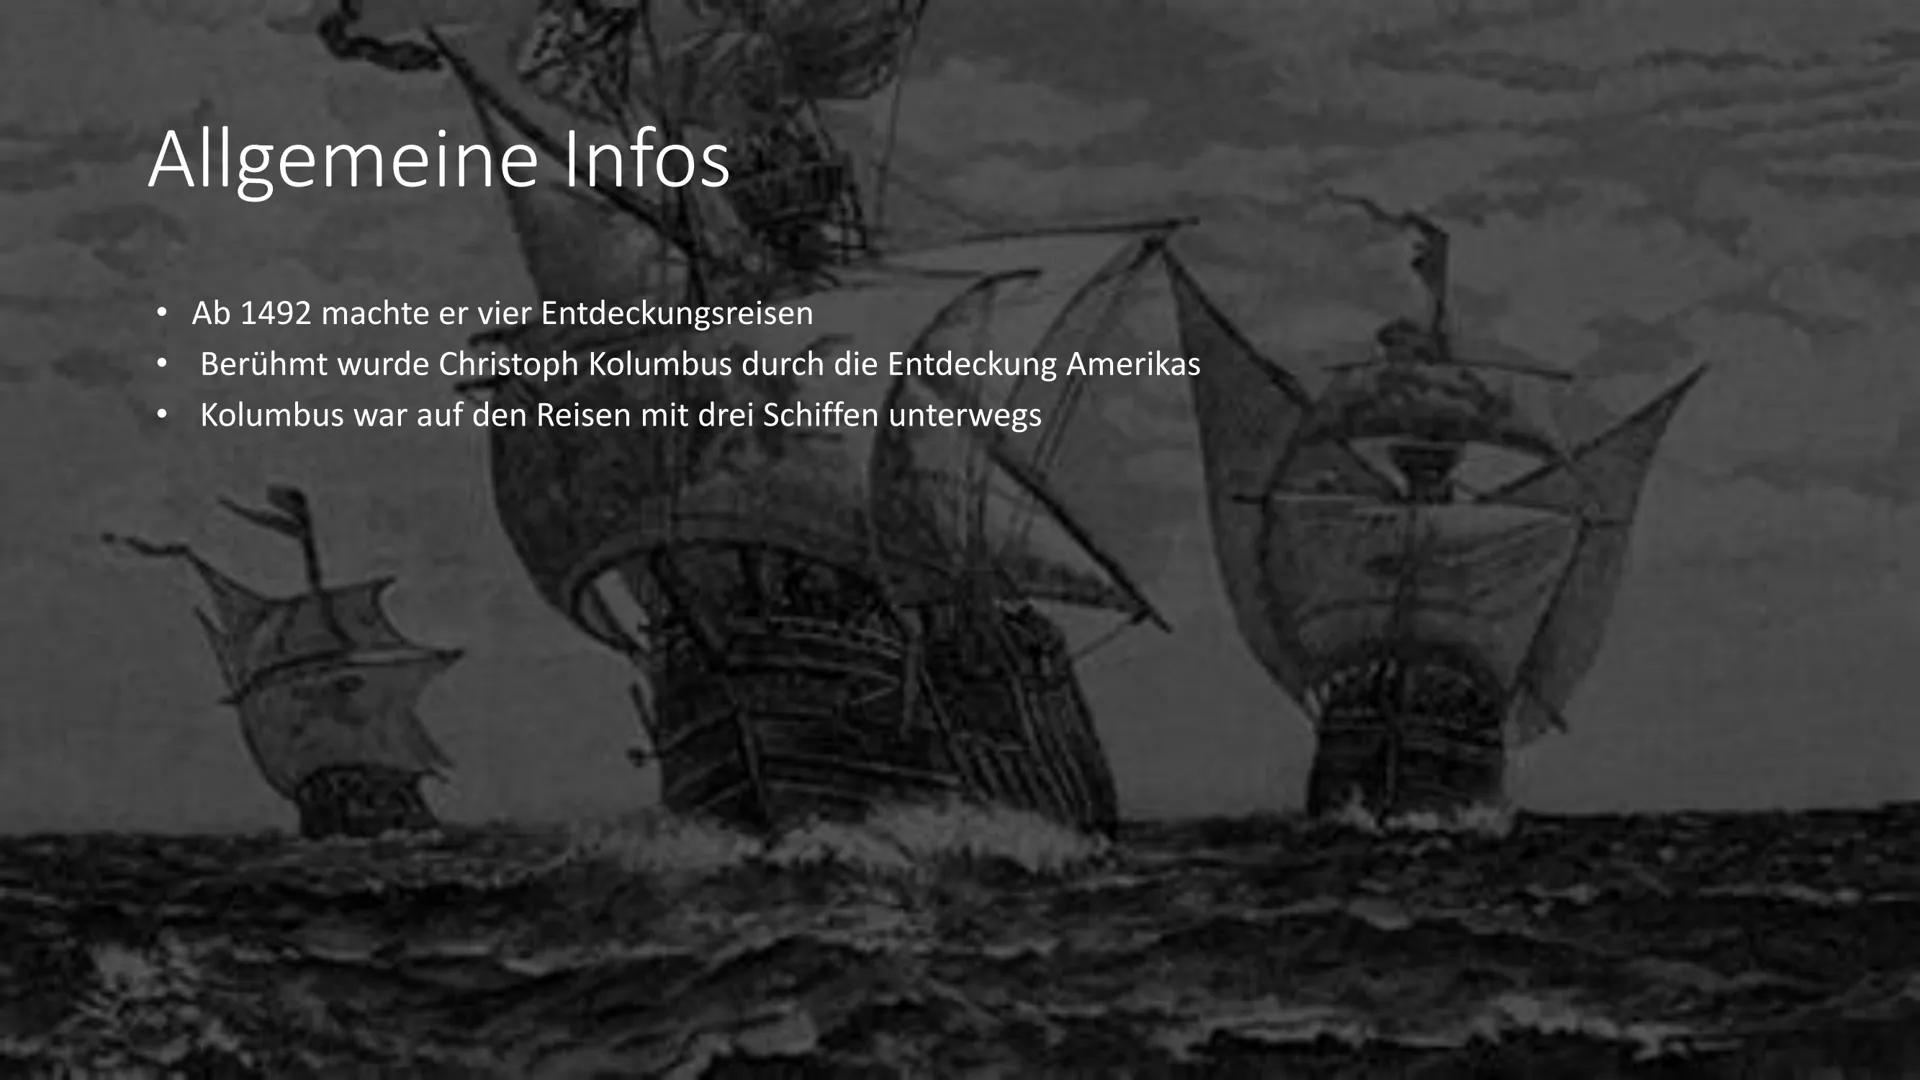 Christoph Kolumbus Gliederung
●
●
●
Steckbrief
Allgemeine Infos
Entdeckung Amerikas
1. und 2. Reise
3. und 4. Reise Steckbrief
●
●
• Geburts